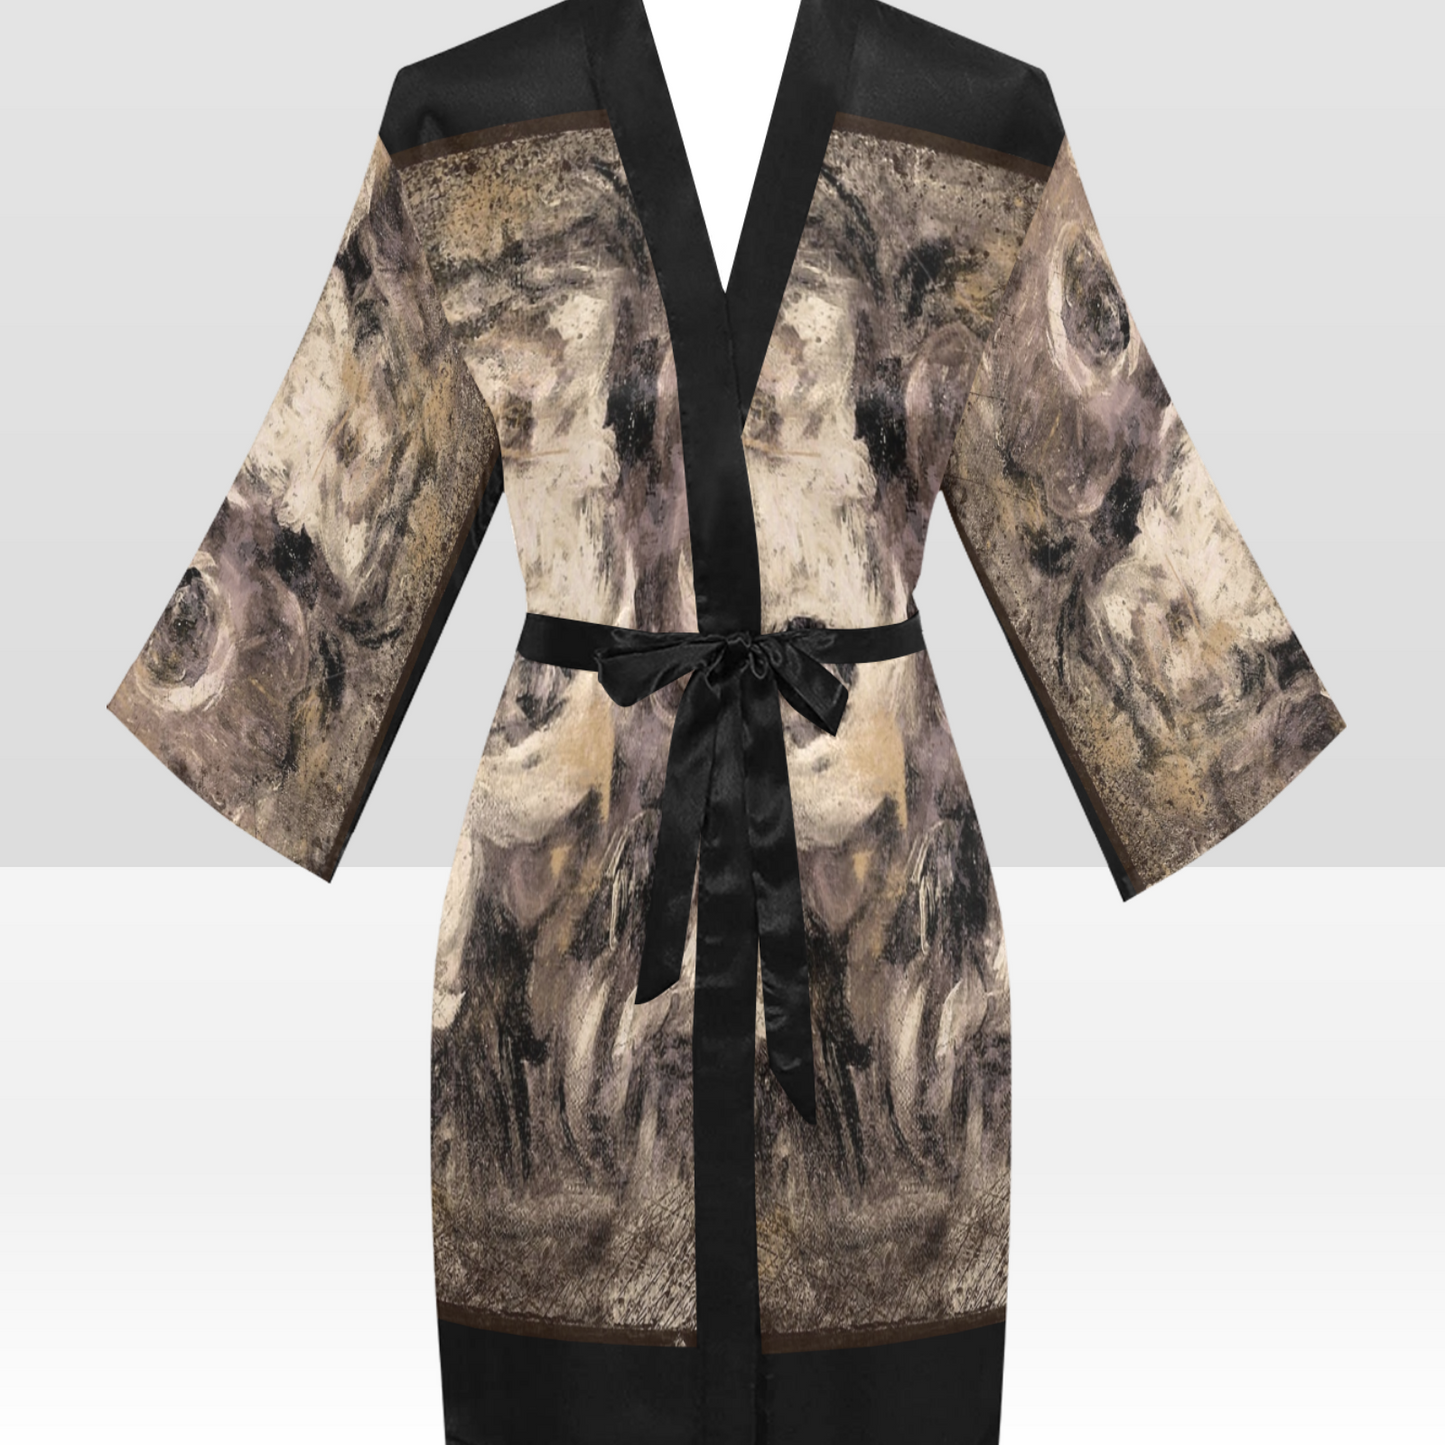 Vintage Floral Kimono Robe, Black or White Trim, Sizes XS to 2XL, Design 16